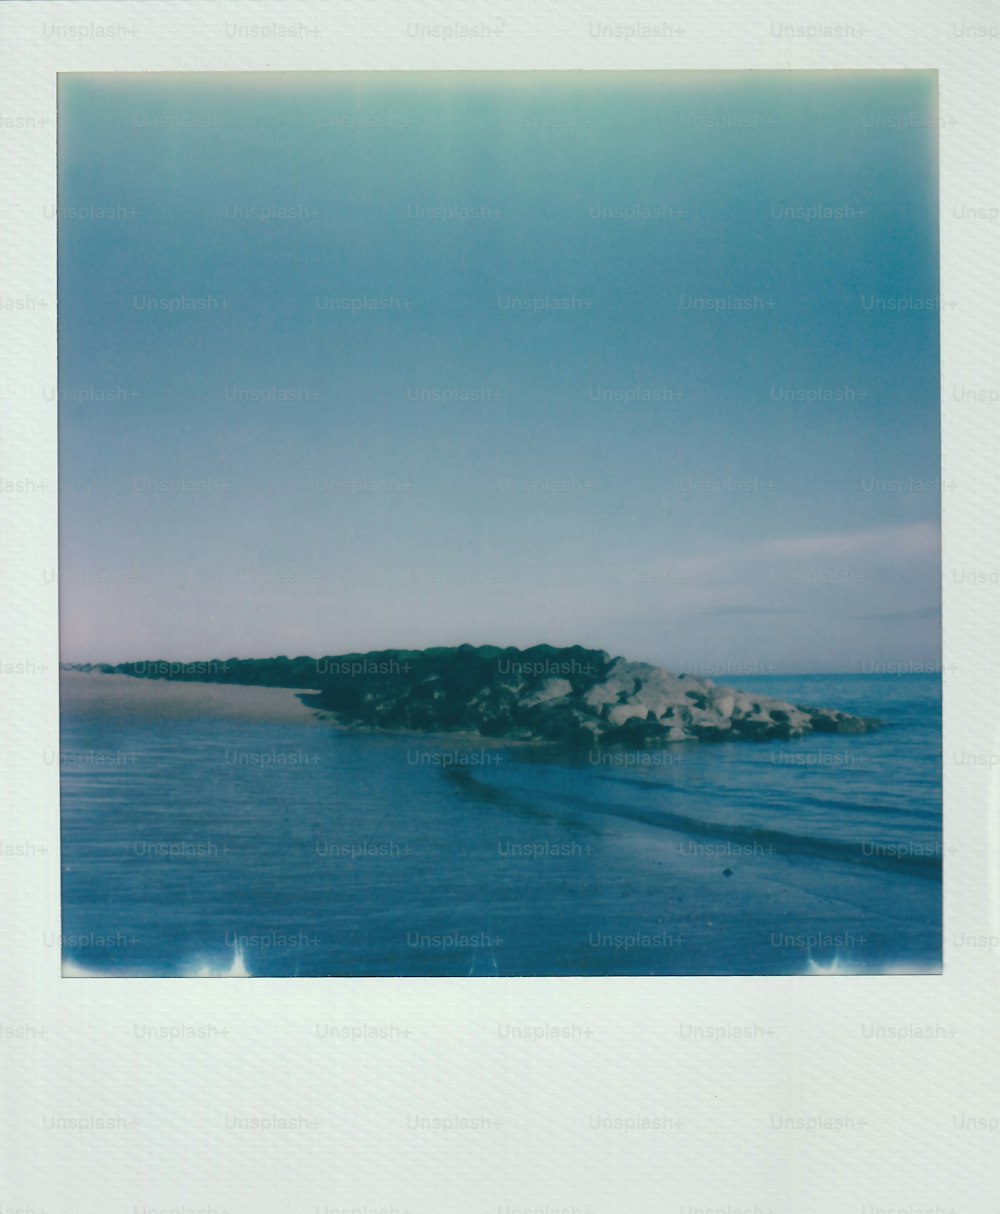 Une photo Polaroid d’une plage avec un affleurement rocheux